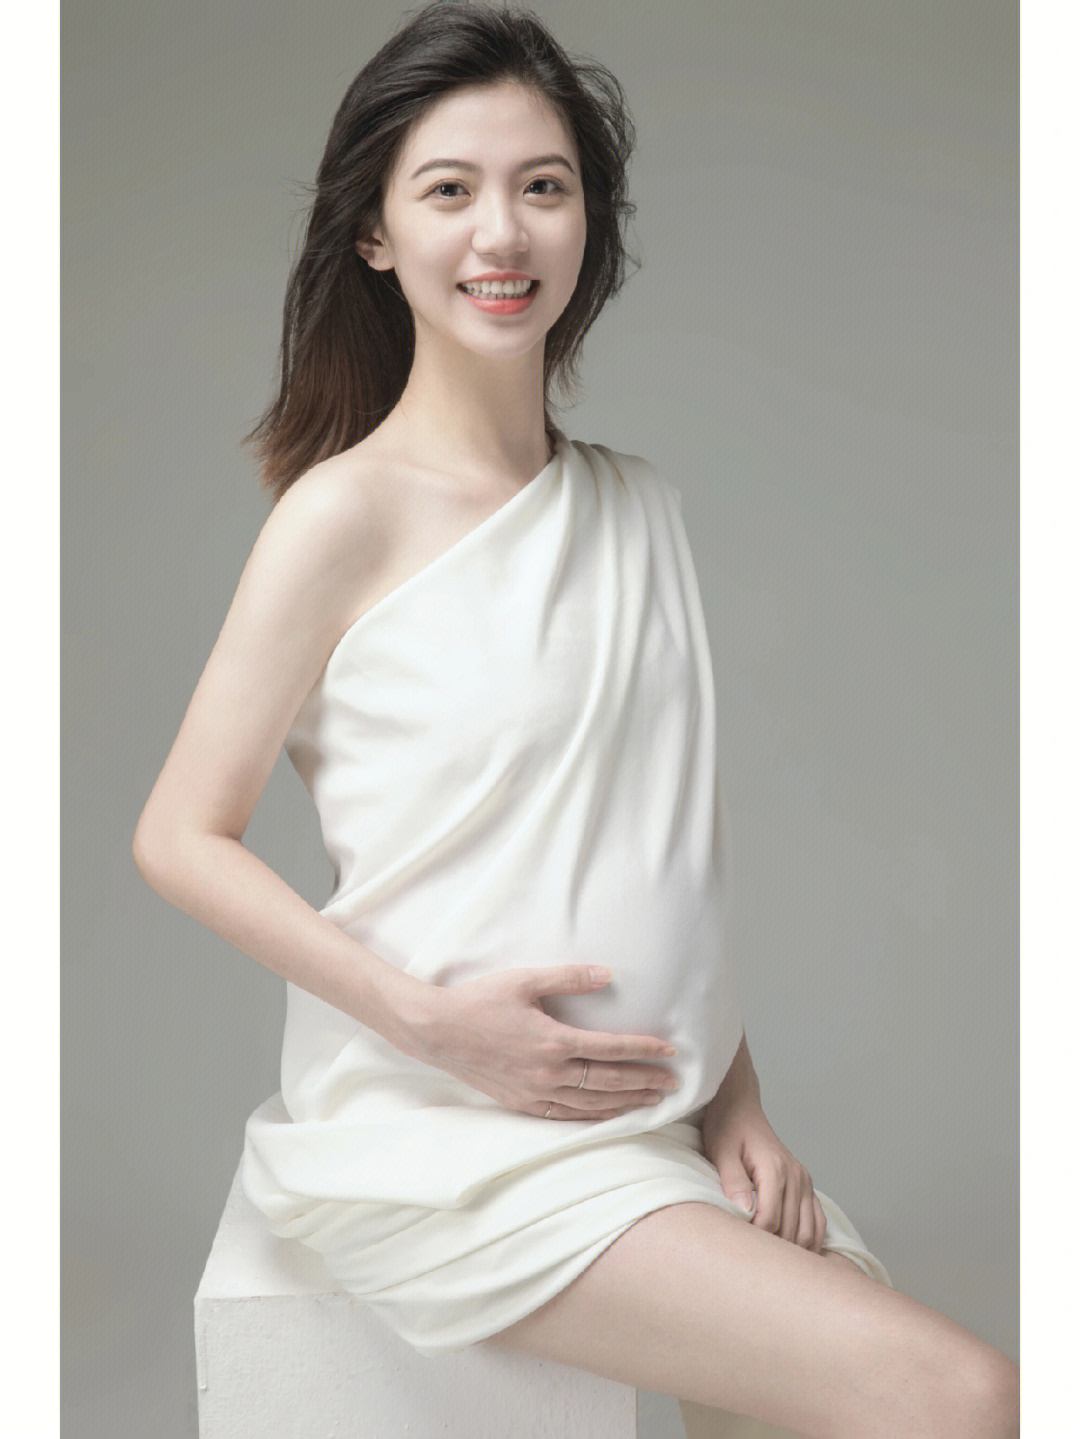 韩系最美孕妇照干净简约最耐看